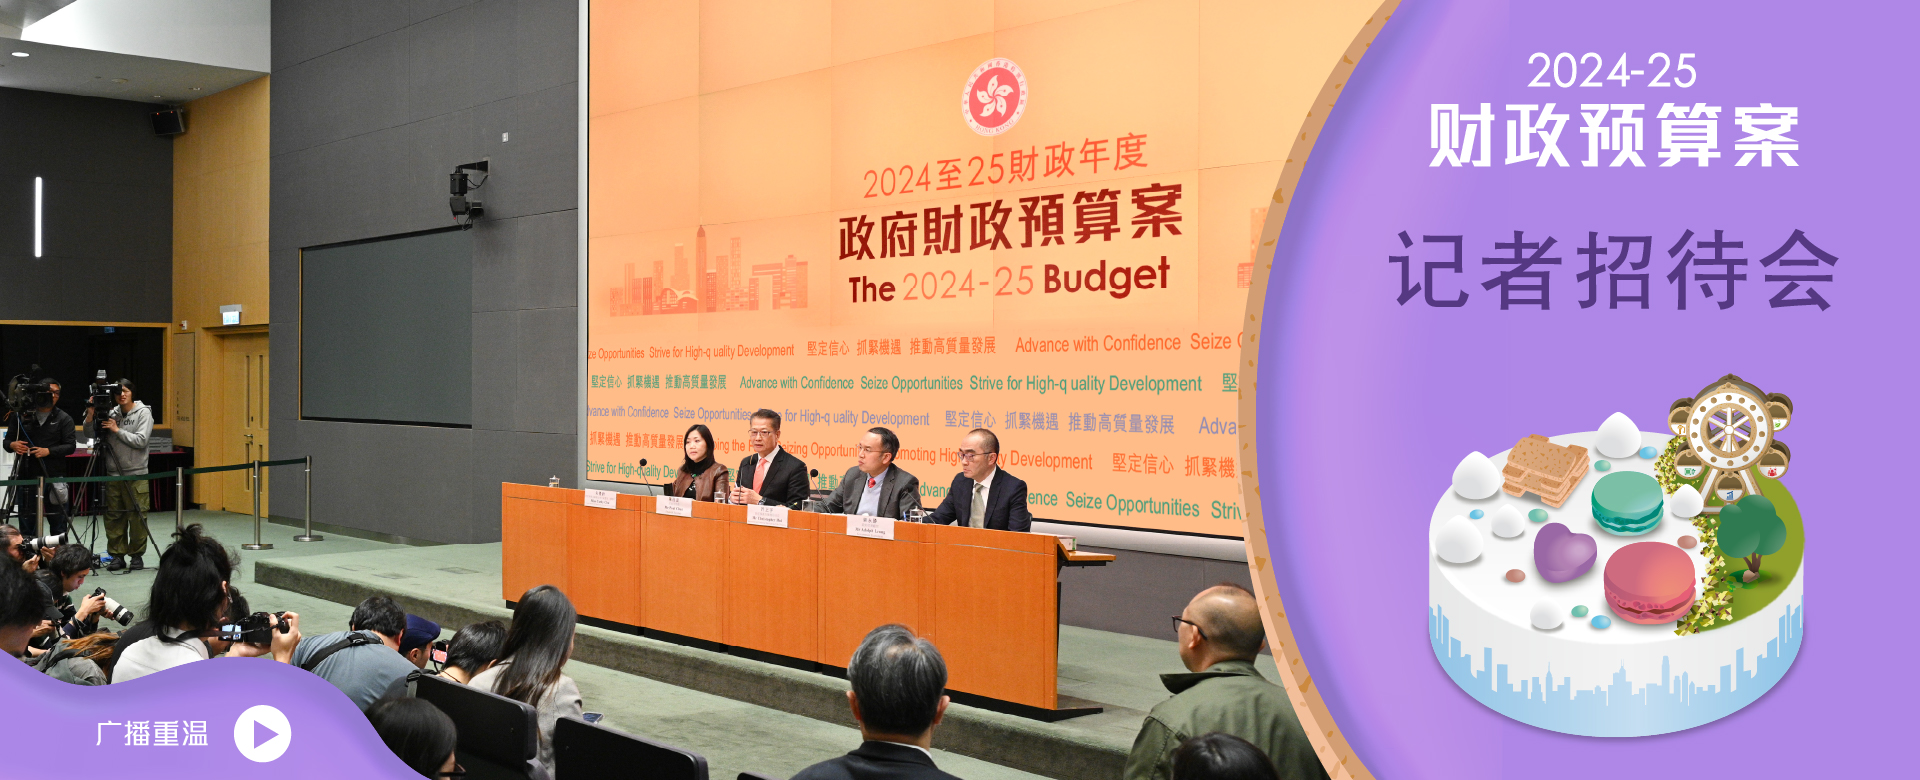 2024-25 财政预算案记者招待会重温